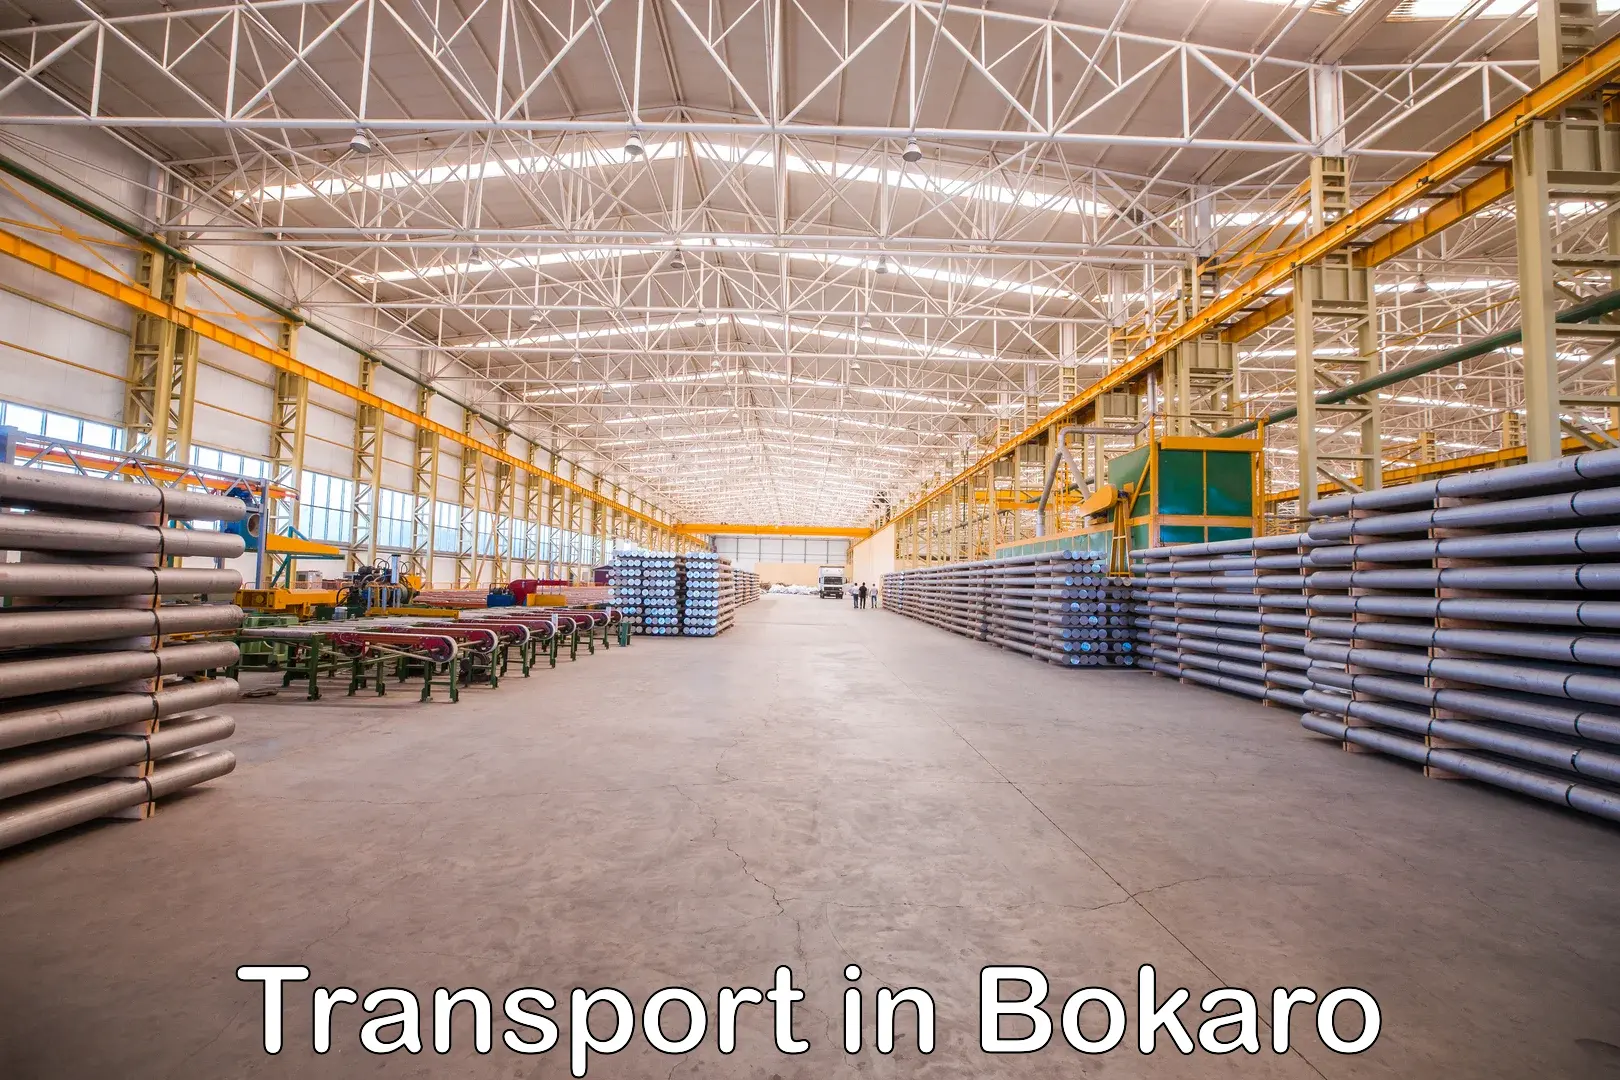 Daily parcel service transport in Bokaro